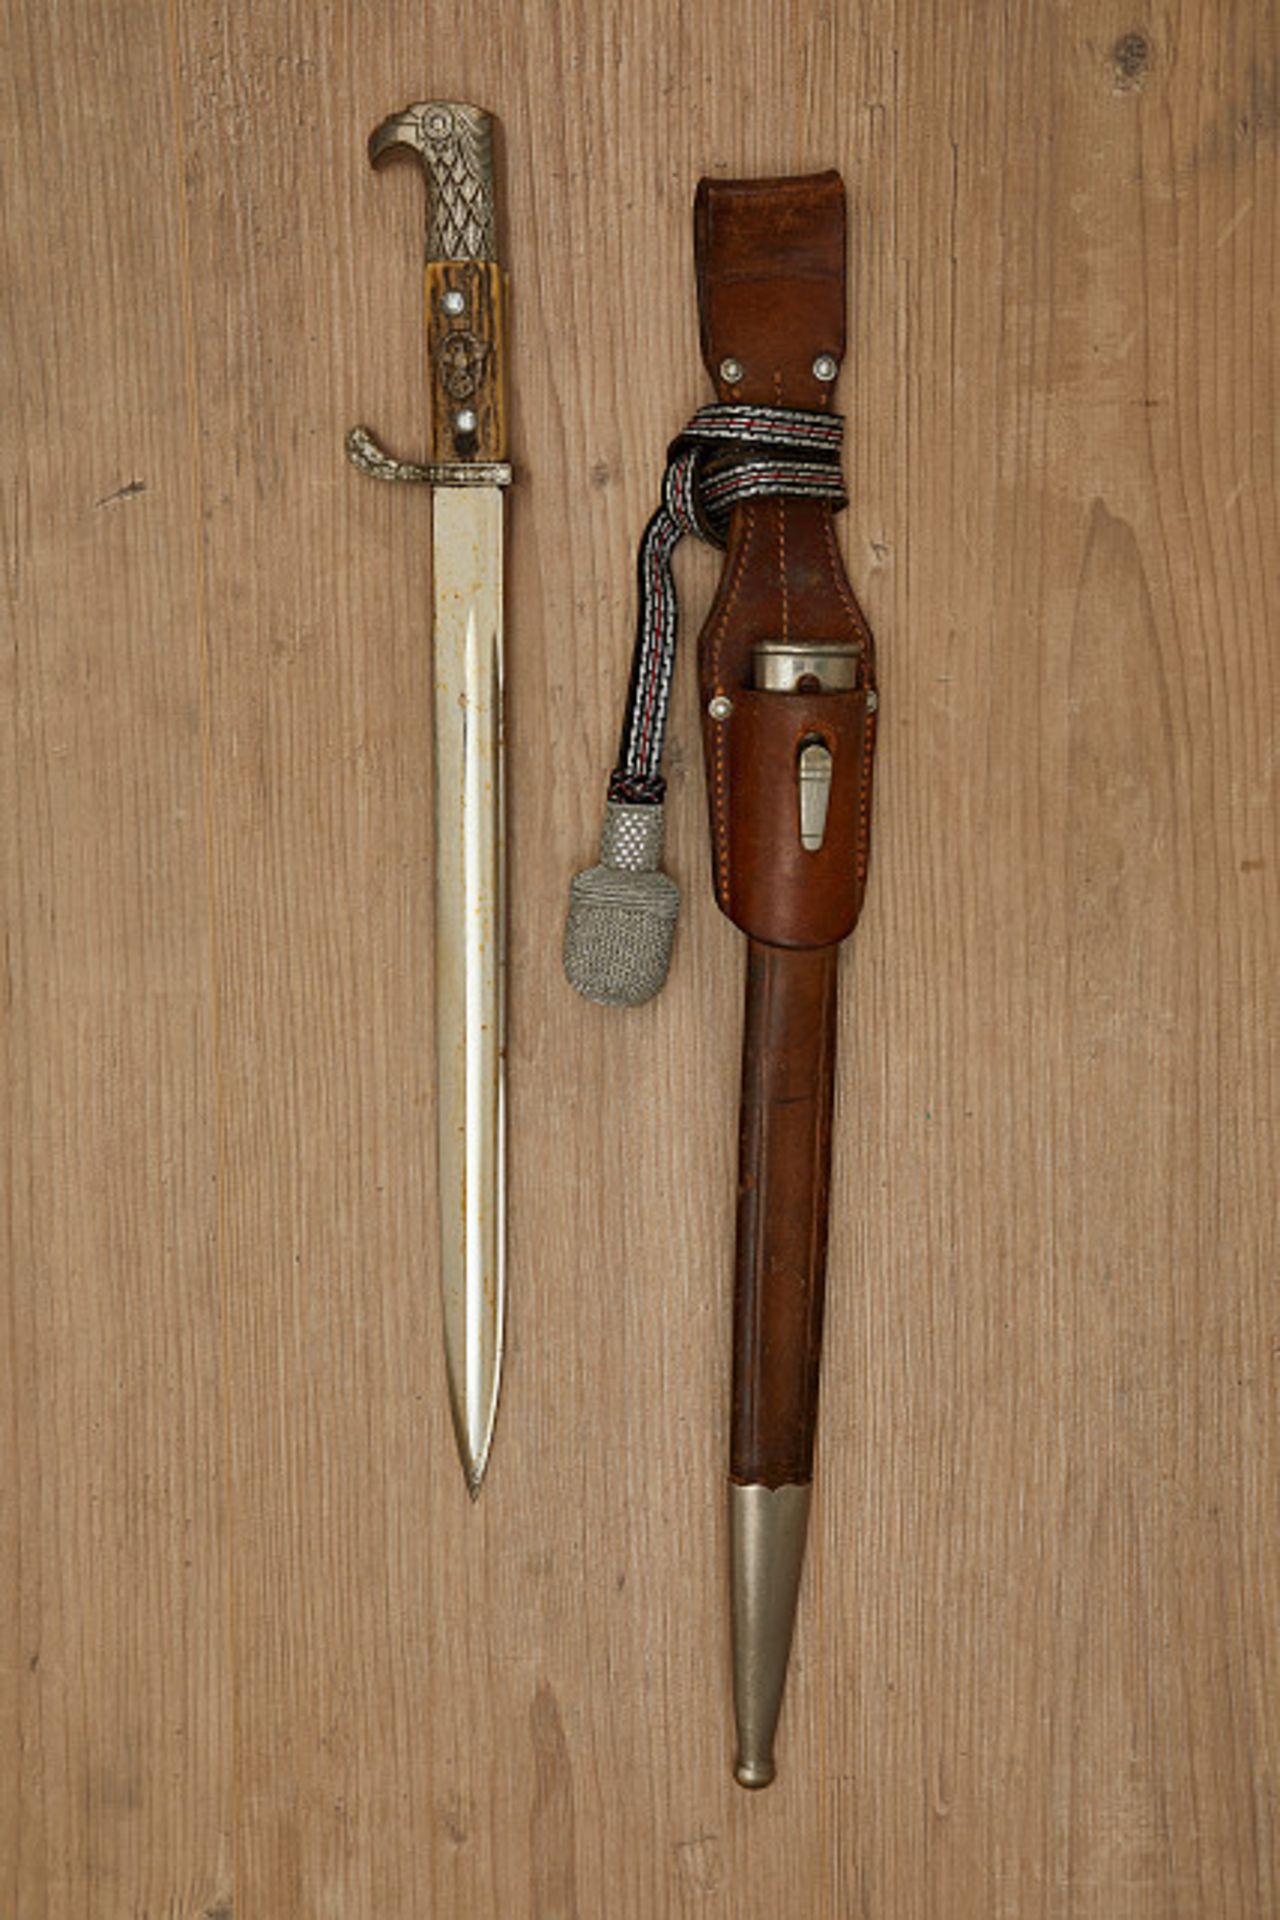 Deutsches Reich 1933 - 1945 - Polizei : Rural Police Bayonet. Rural Police Bayonet. Maker marked WKC